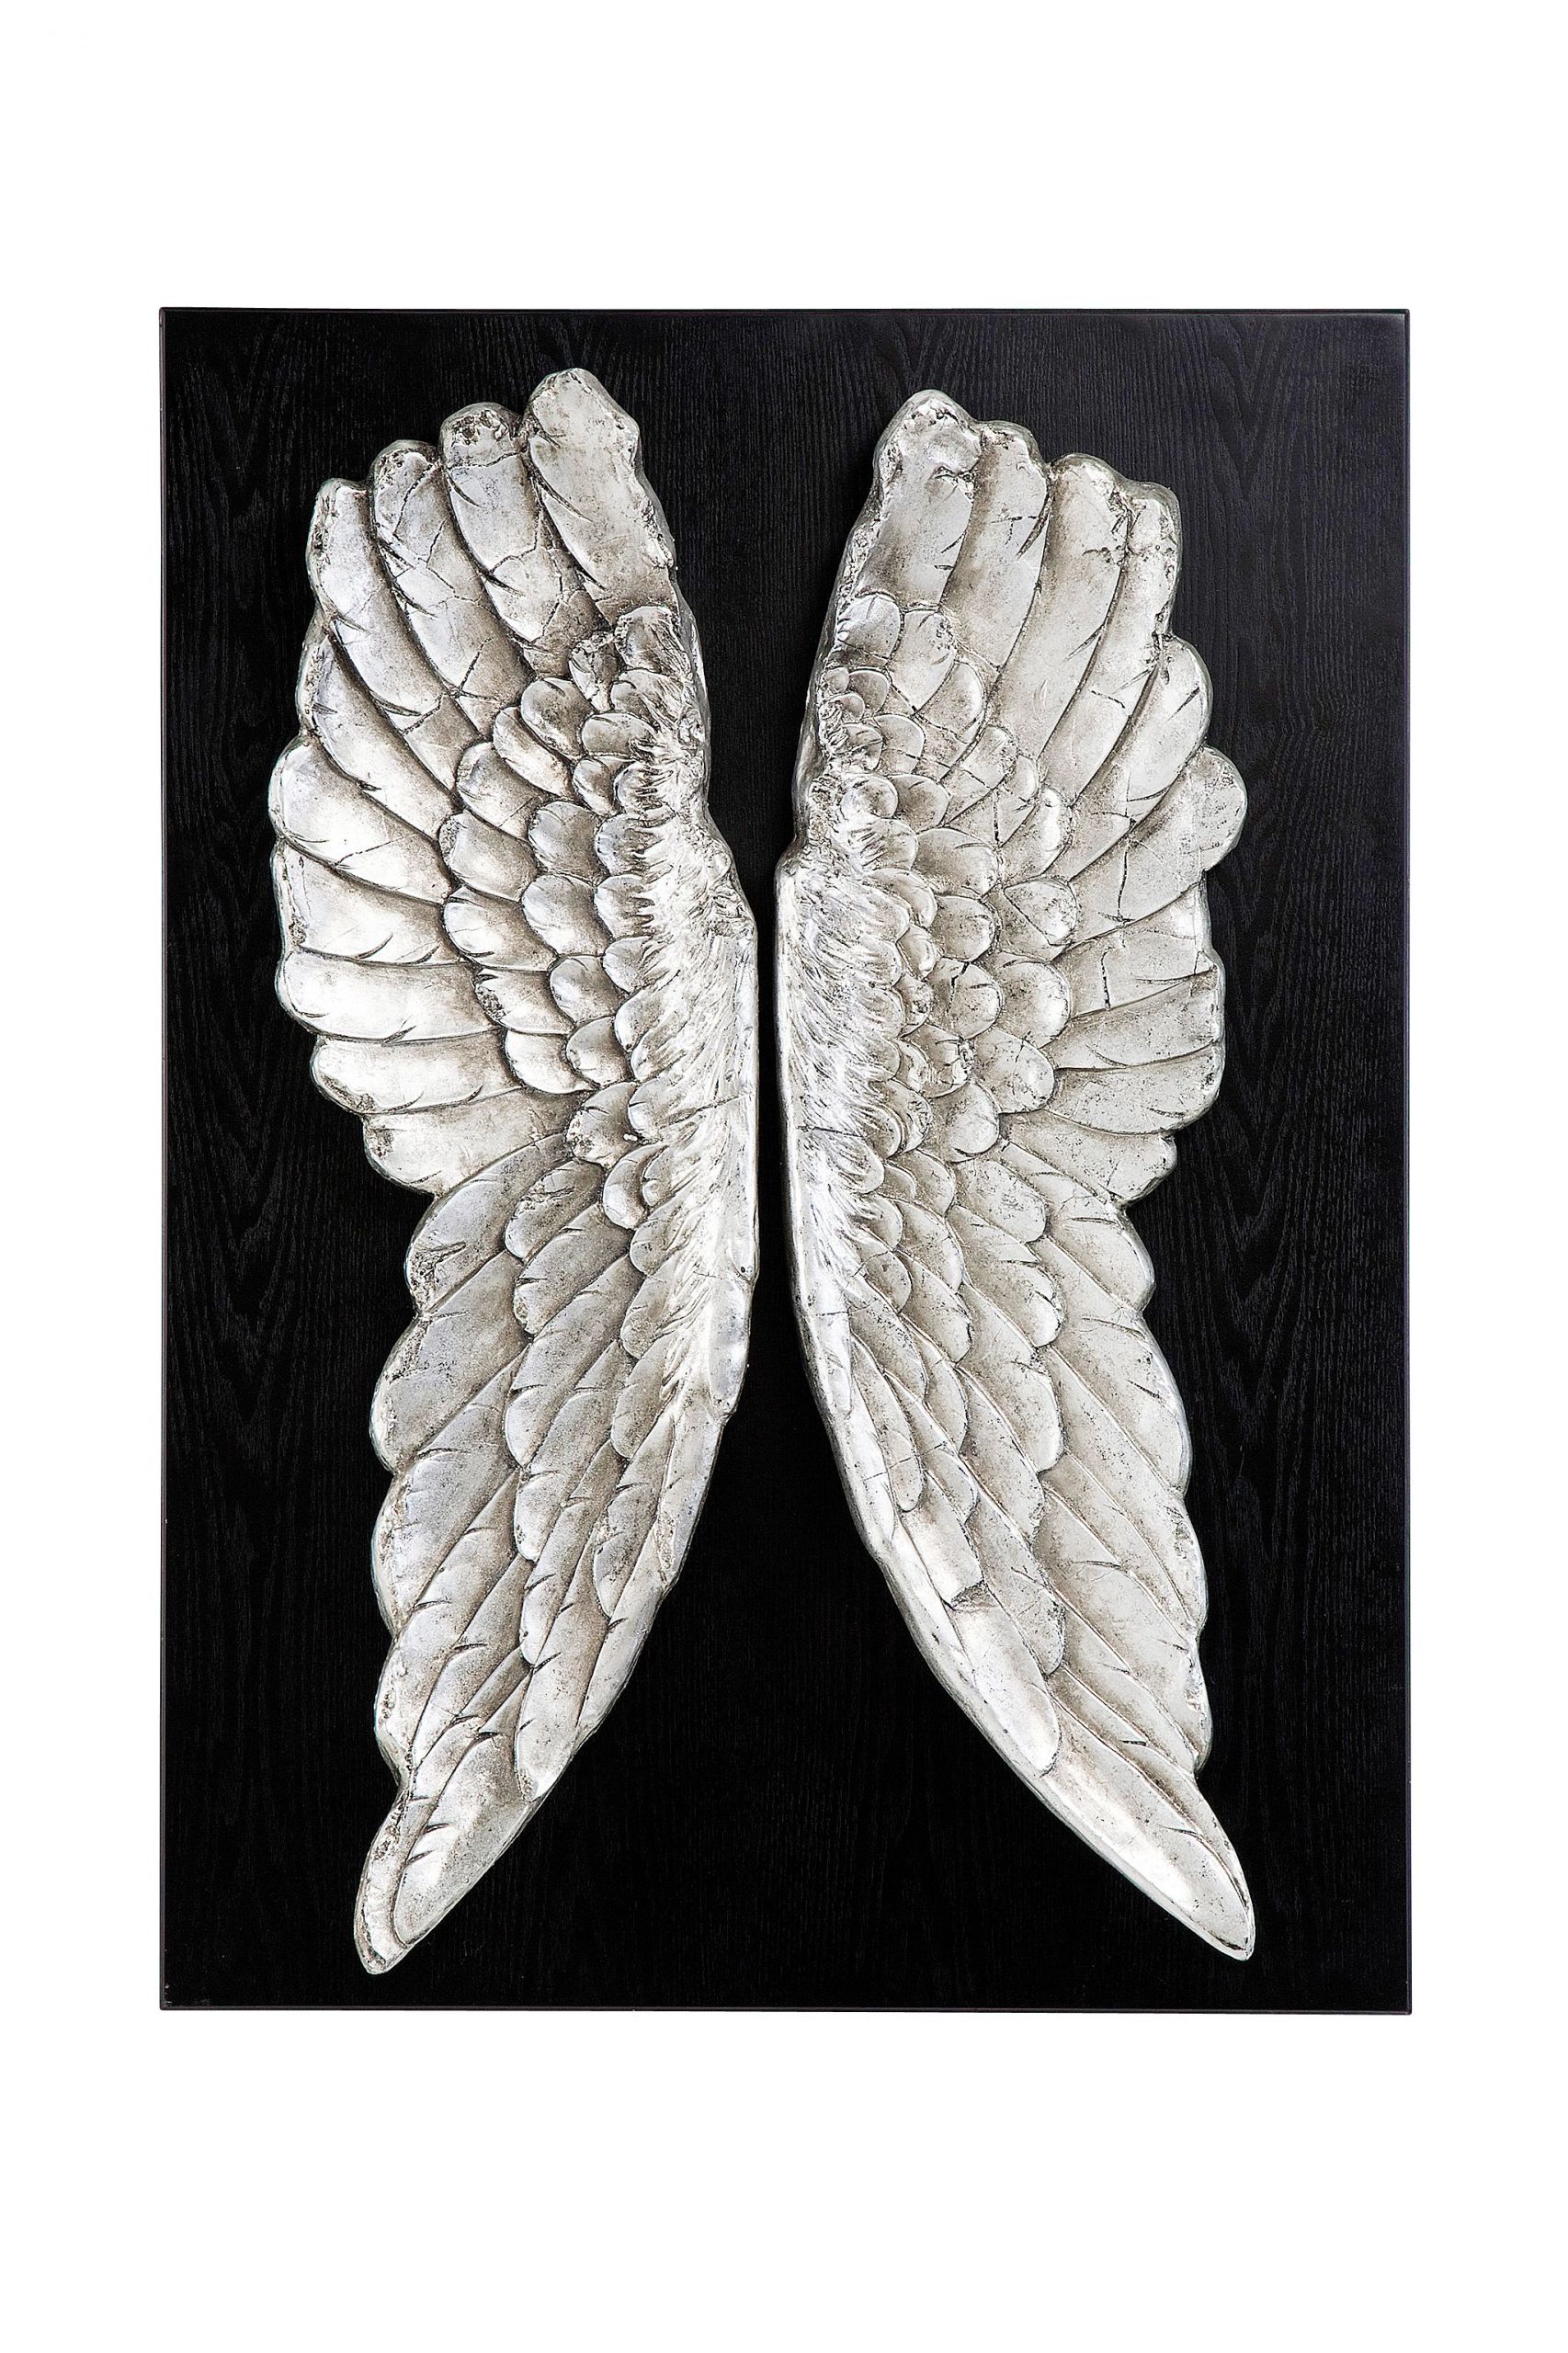 Gartendeko Engel Einzigartig Kare Design Wandschmuck Wings Mit Silbrig Glänzenden Flügeln